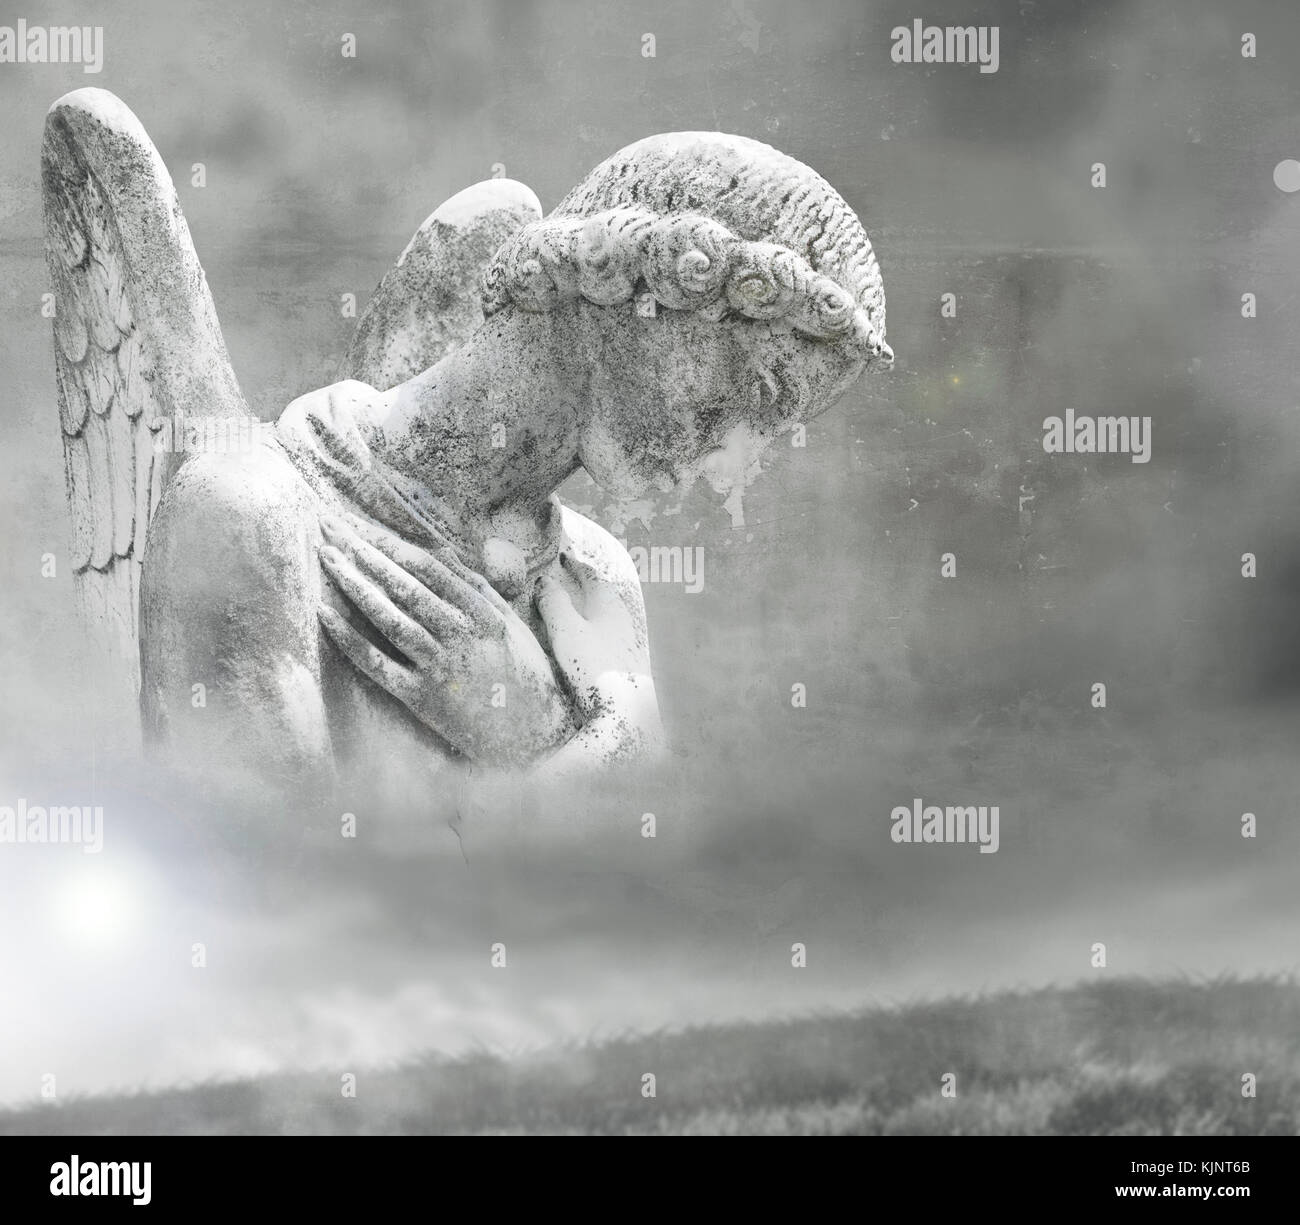 Abstract fantasme d'un bel ange dans un contexte surréaliste en noir et blanc Banque D'Images